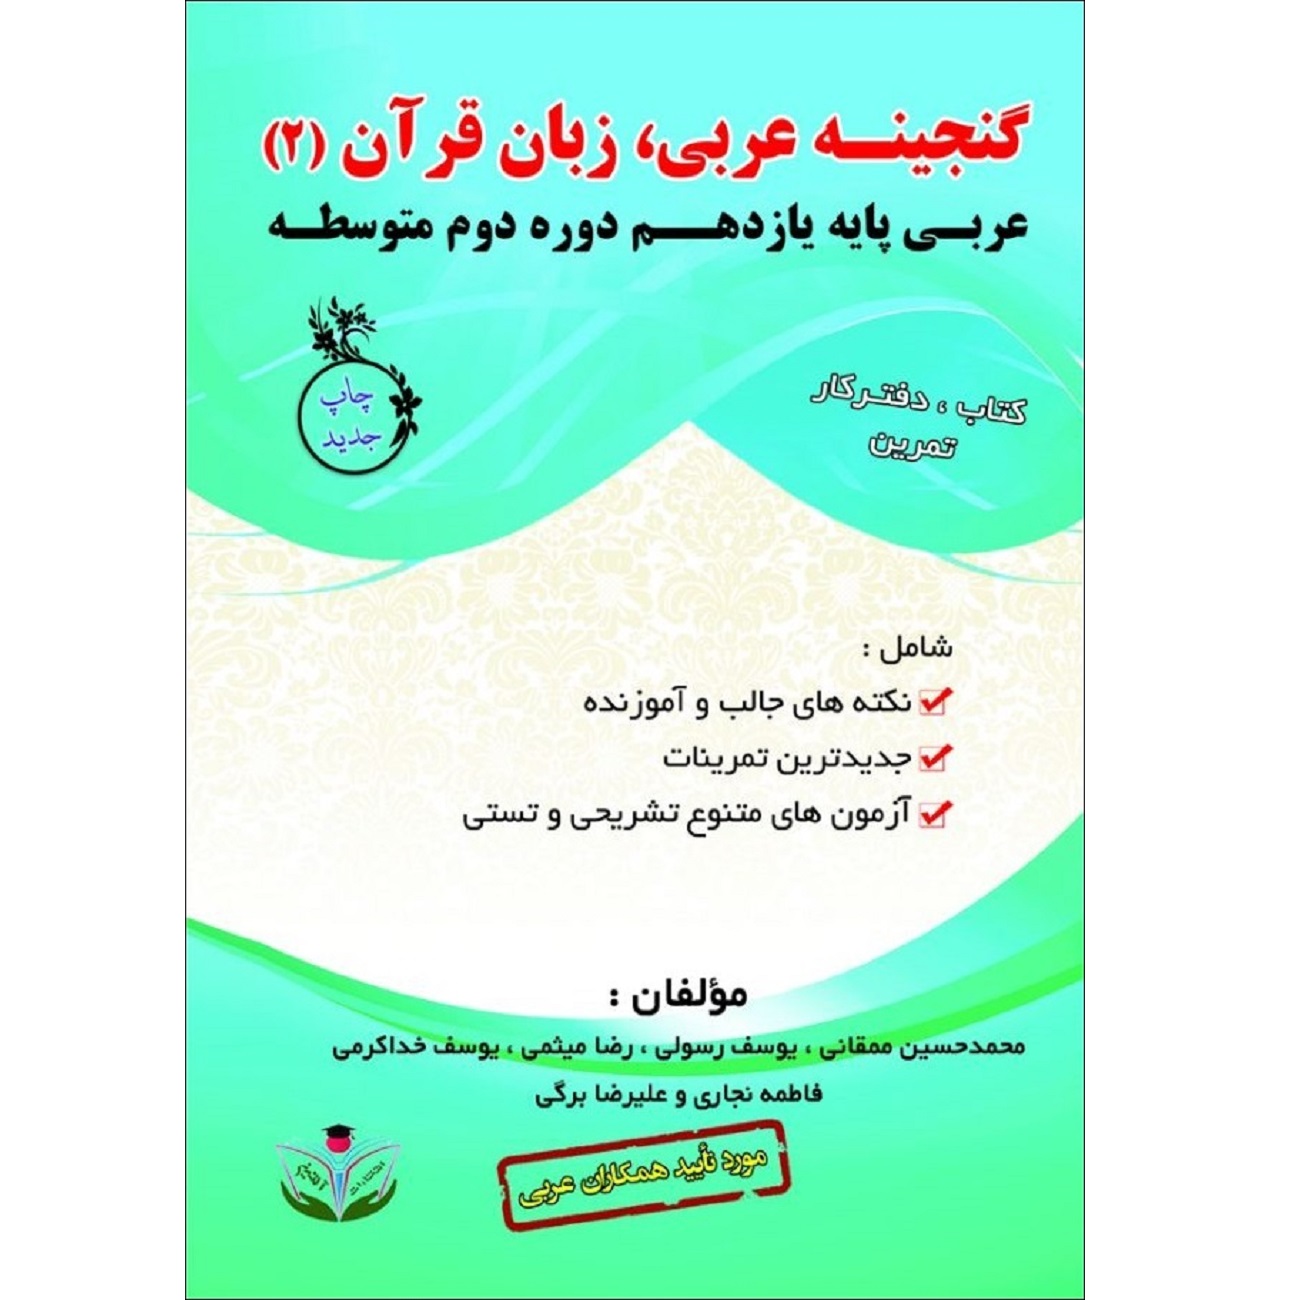 کتاب گنجینه عربی زبان قرآن (2) عربی پایه یازدهم دوره دوم متوسطه اثر جمعی از نویسندگان انتشارات آلتین